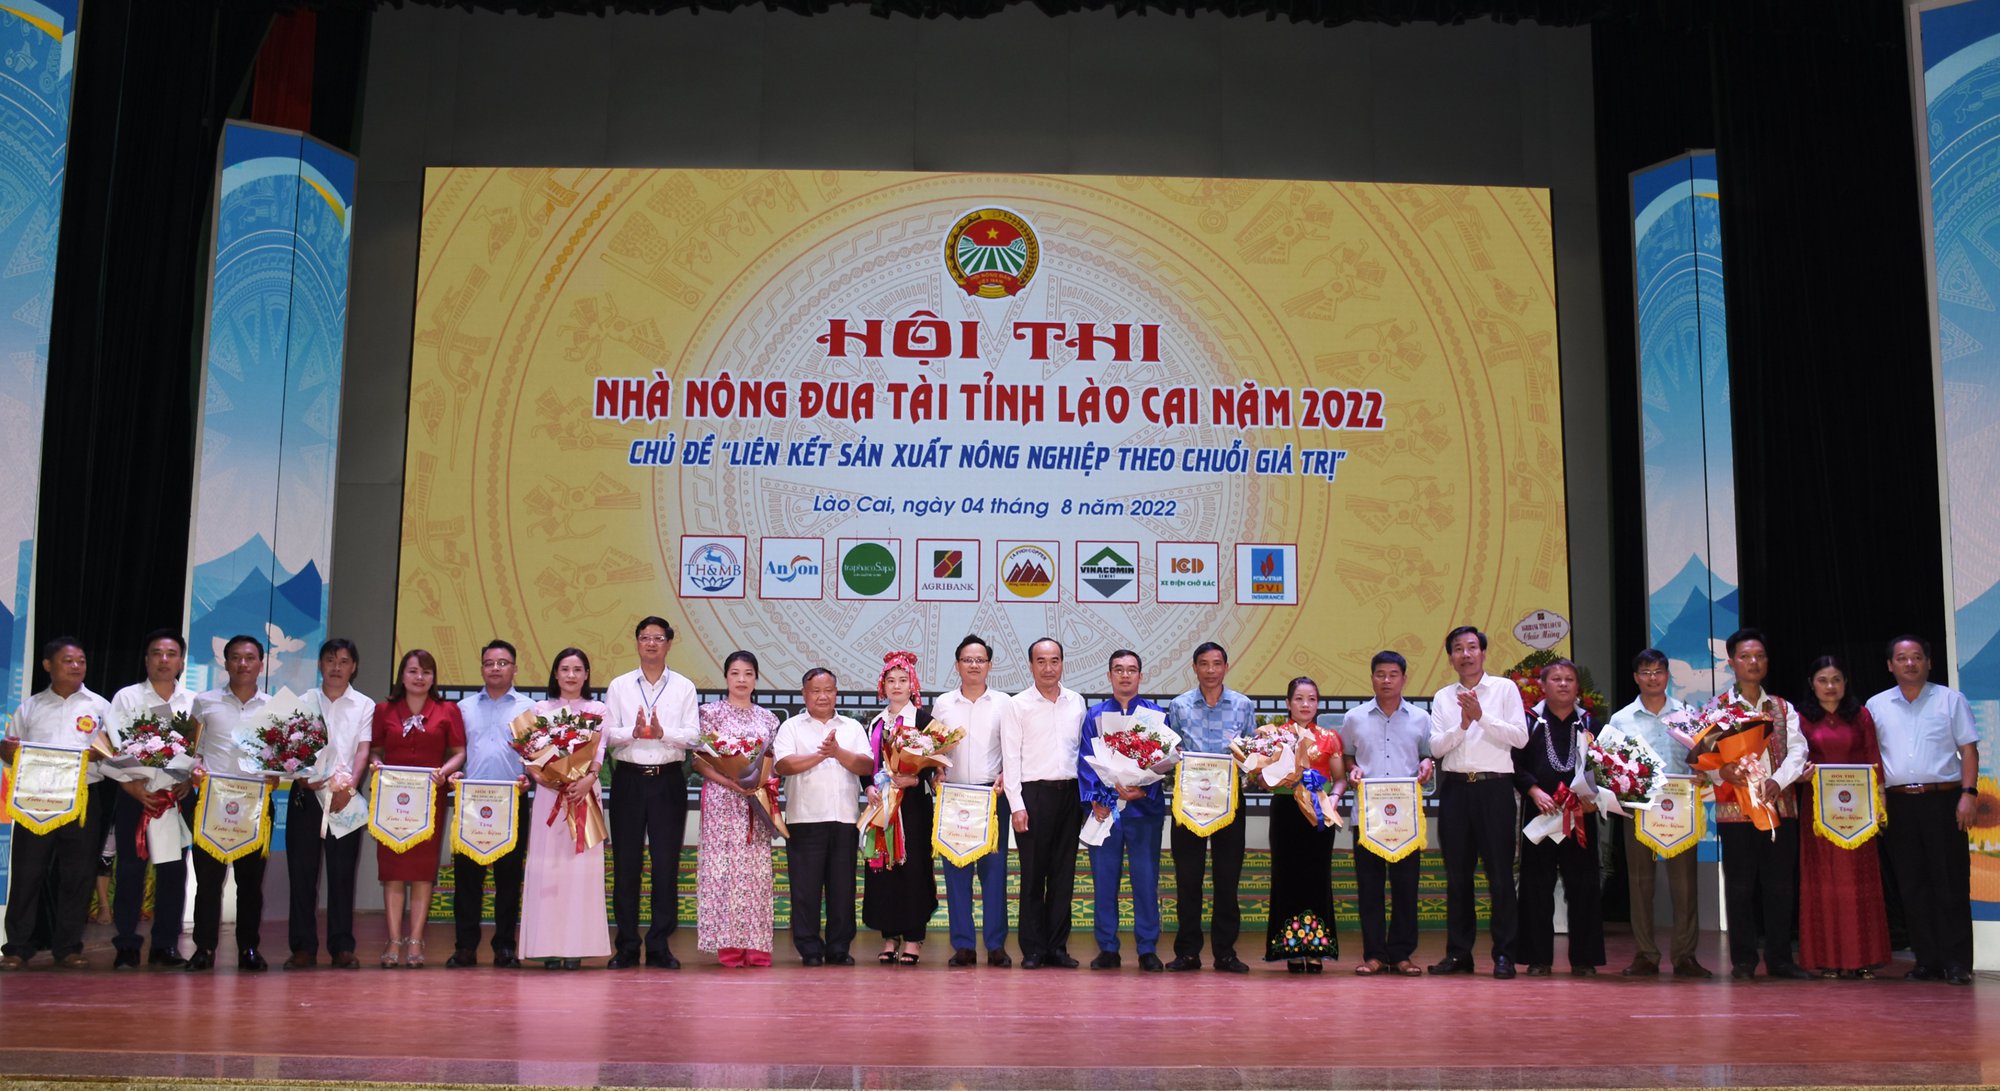 Thành công của Hội thi Nhà nông đua tài tỉnh Lào Cai năm 2022 - Ảnh 1.